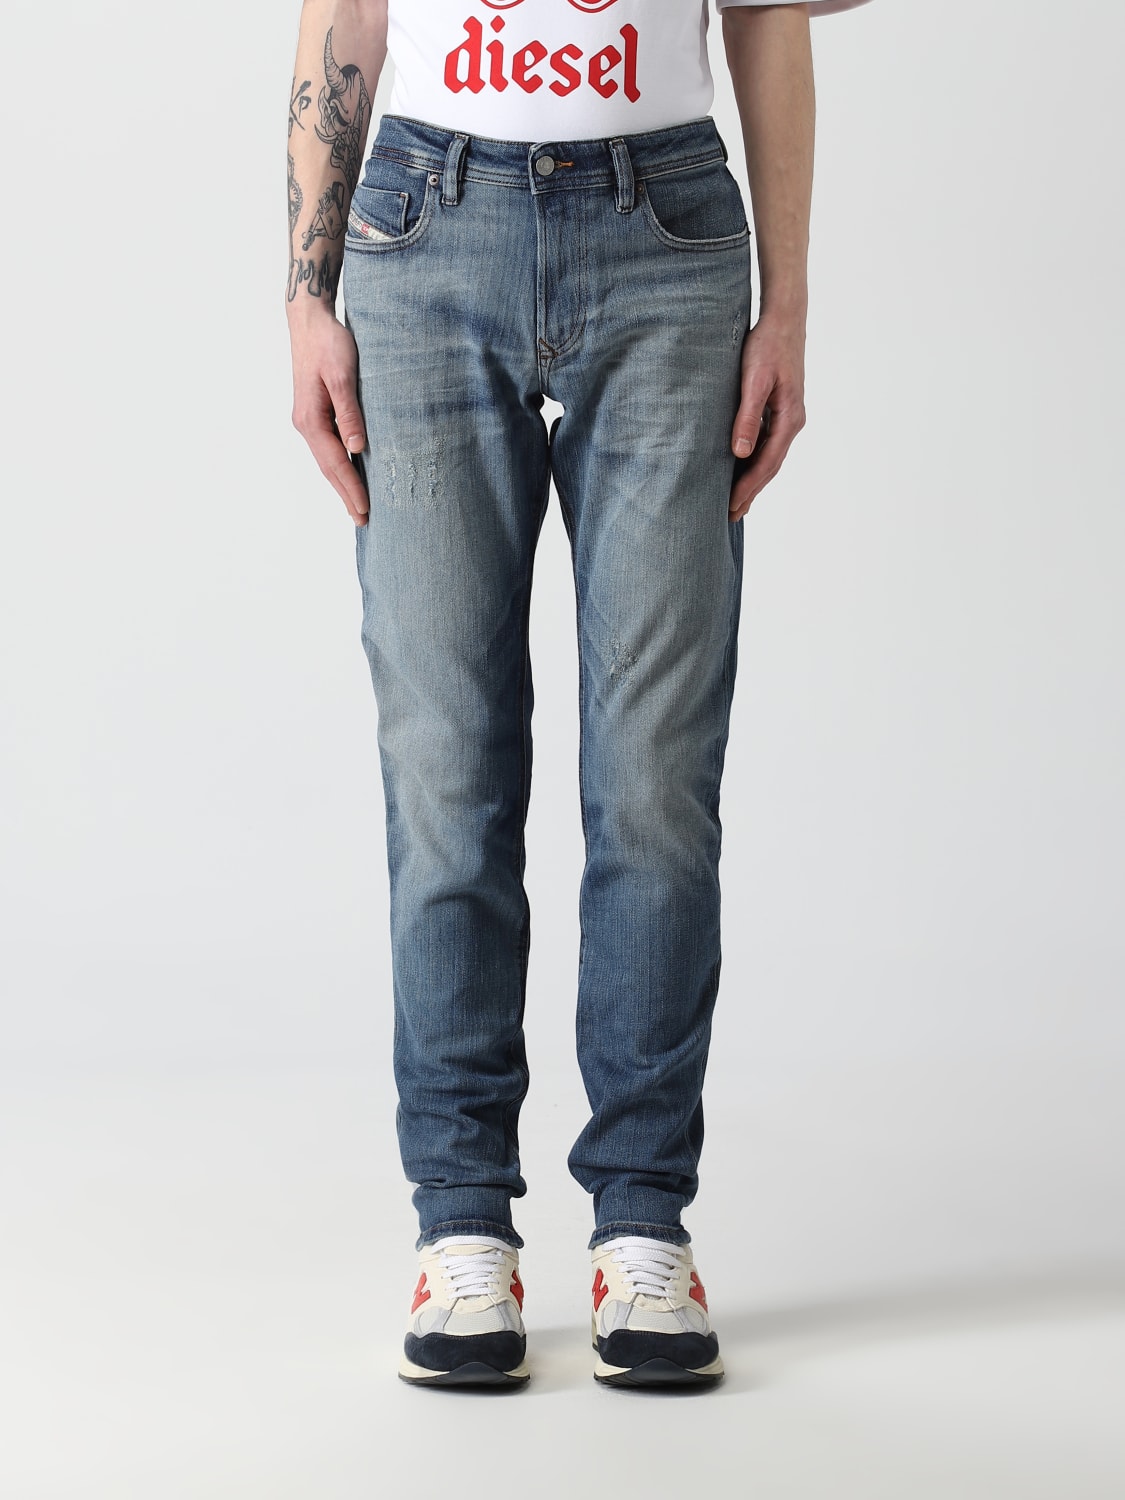 Postimpressionisme Gå op Kiks Diesel Outlet: denim jeans - Stone Washed | Diesel jeans A035940NFAM online  at GIGLIO.COM